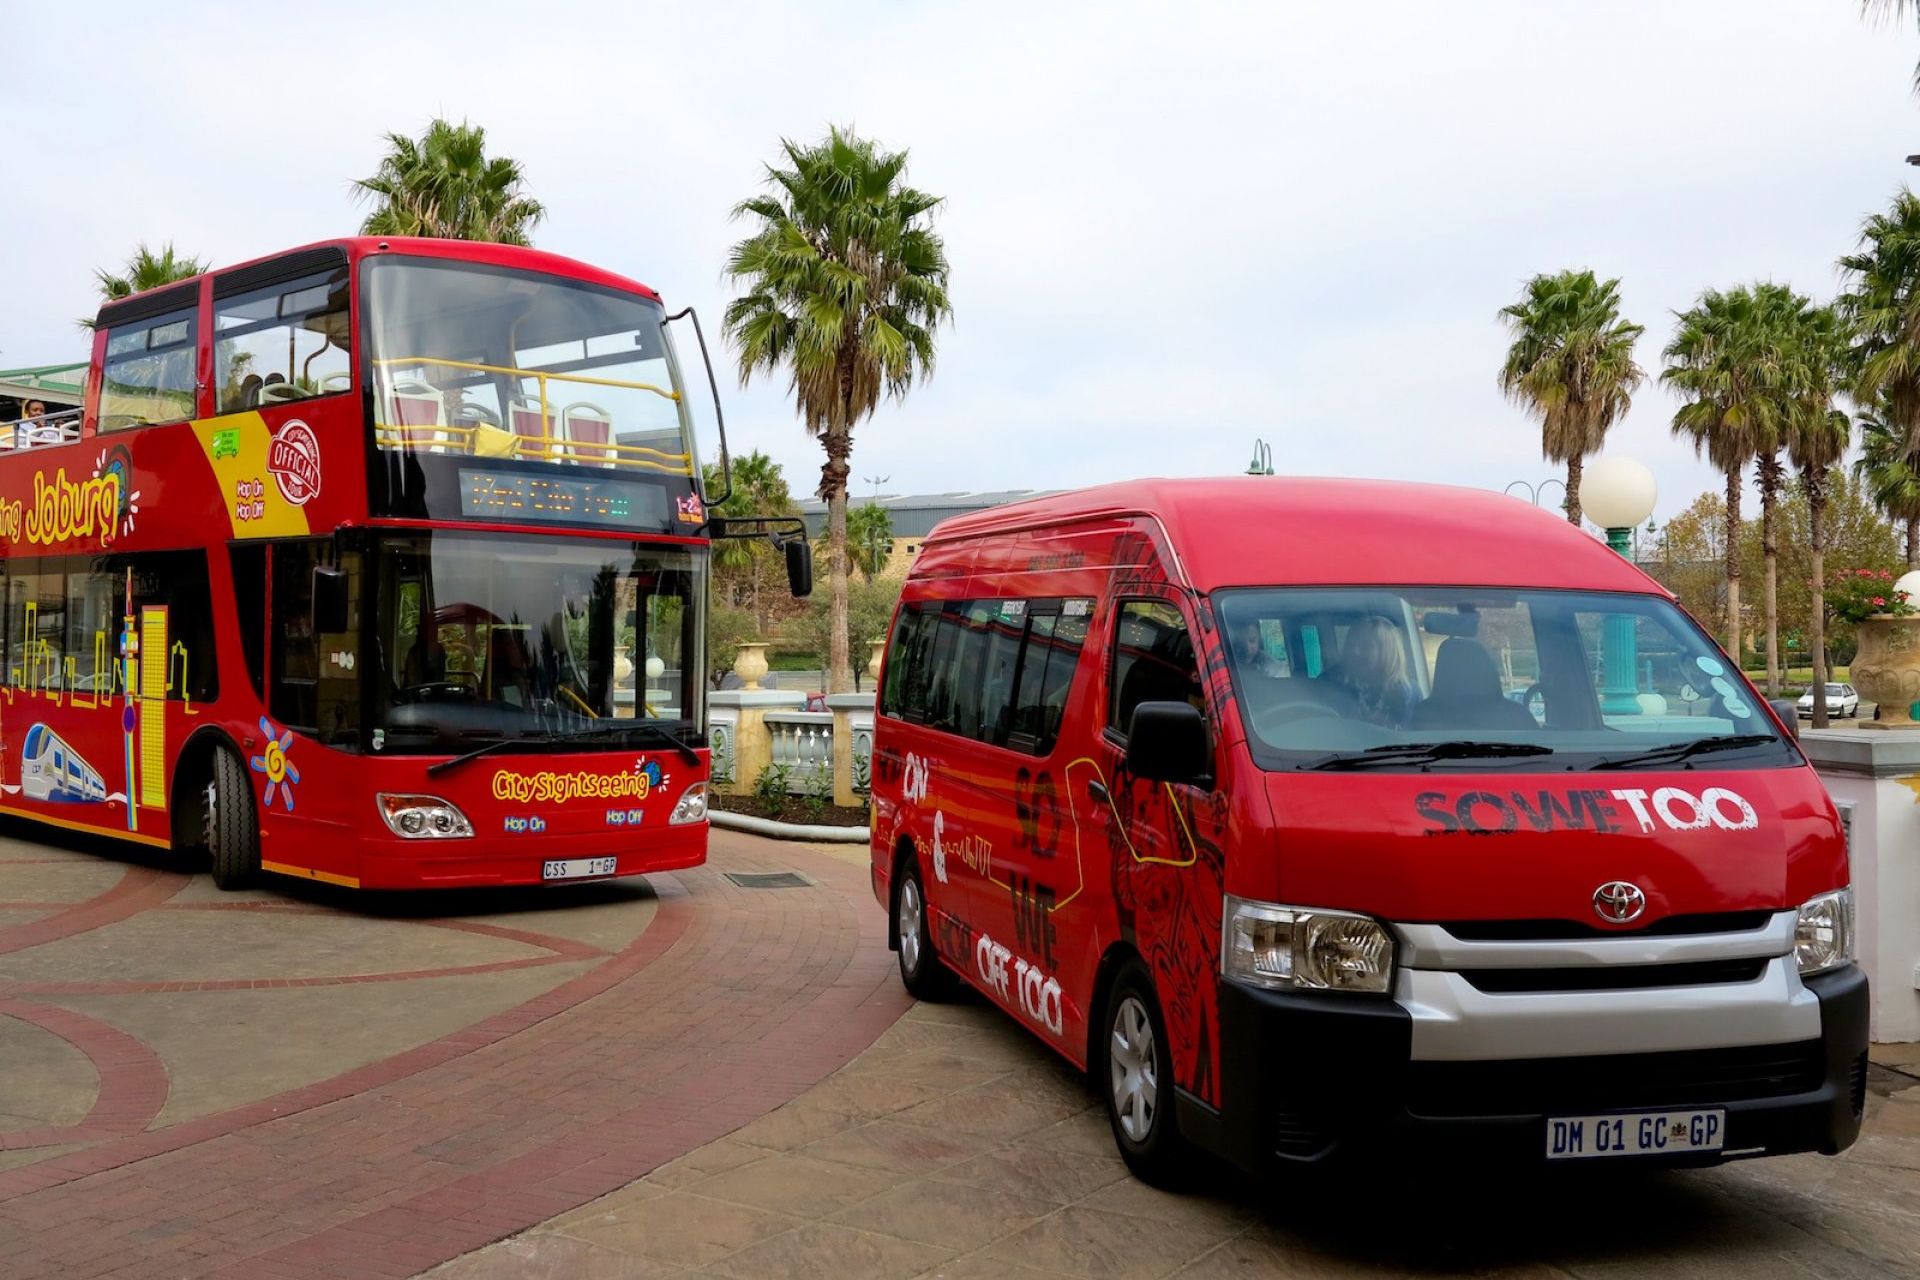 johannesburg open bus tour